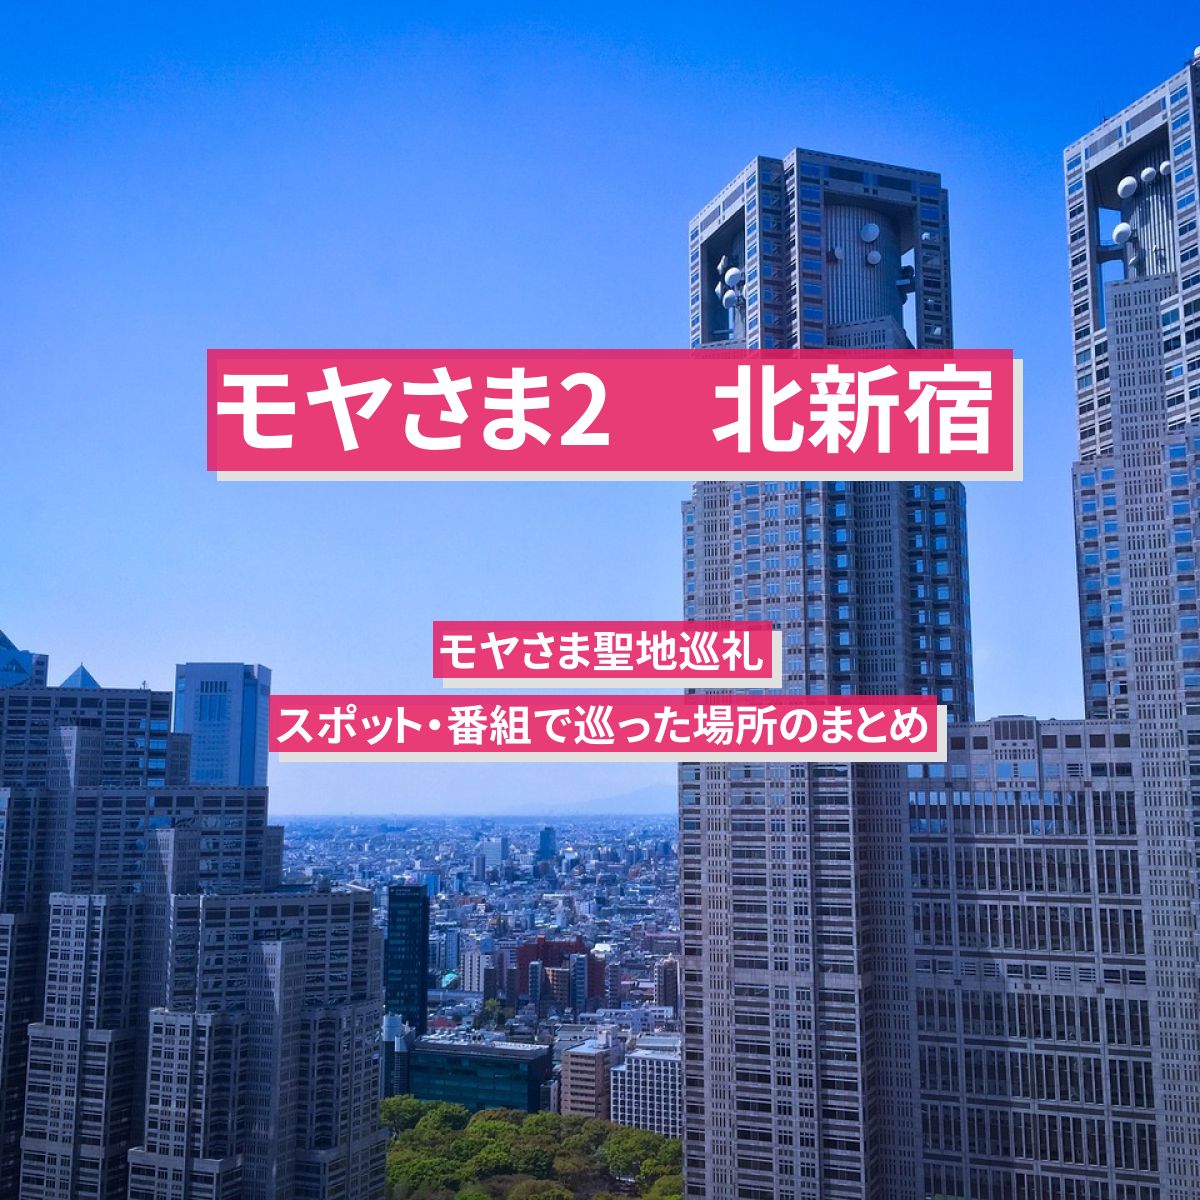 【モヤさま2】北新宿のスポット・番組で巡った場所のまとめ〔モヤモヤさまぁ～ず2〕